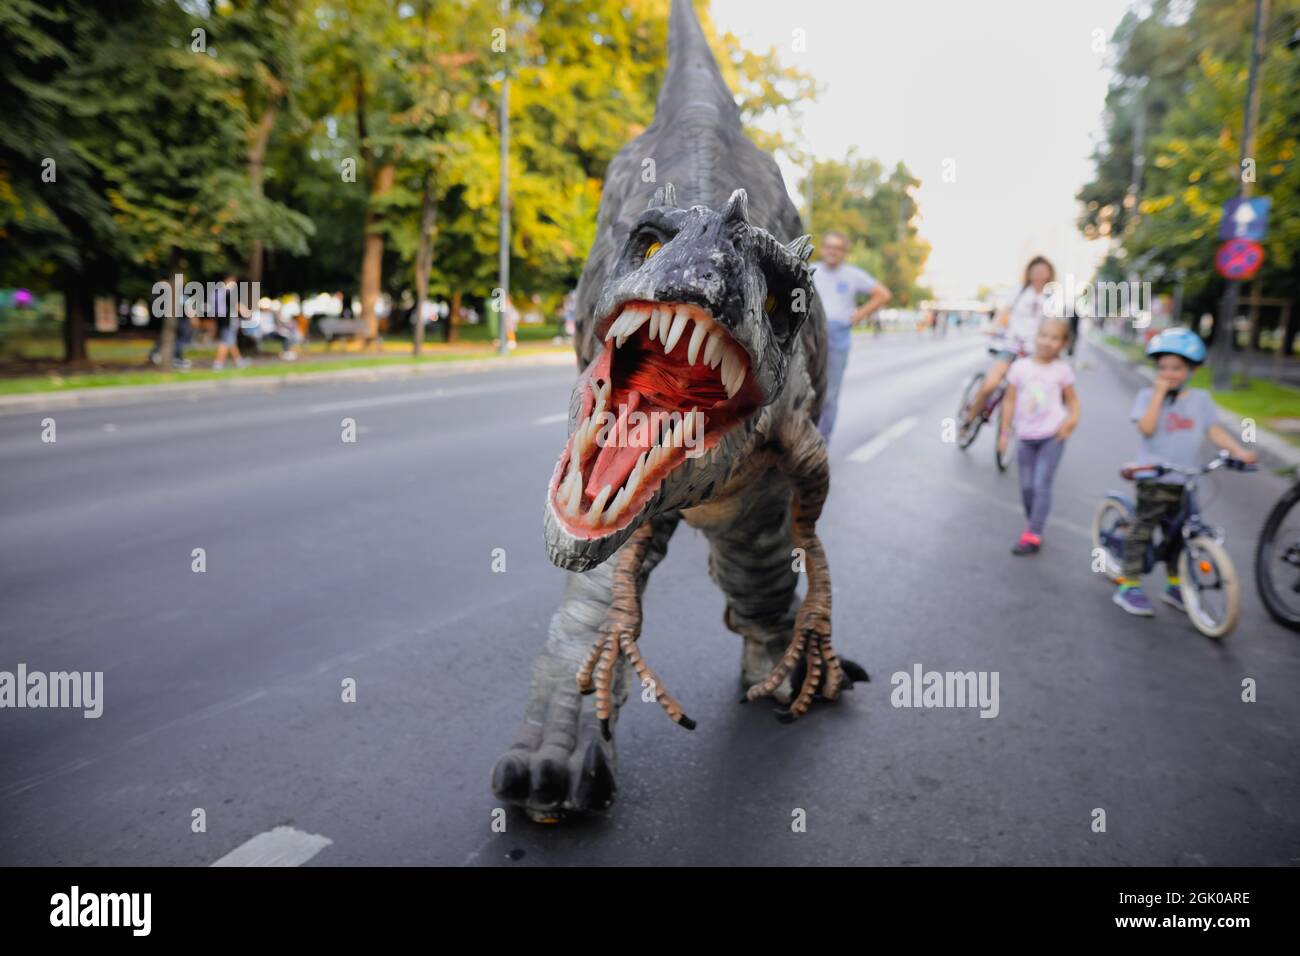 Bucarest, Romania - 29 agosto 2021: Un uomo in costume da dinosauro carnivoro cammina tra le persone e li lascia accarezzare durante un evento all'aperto Foto Stock